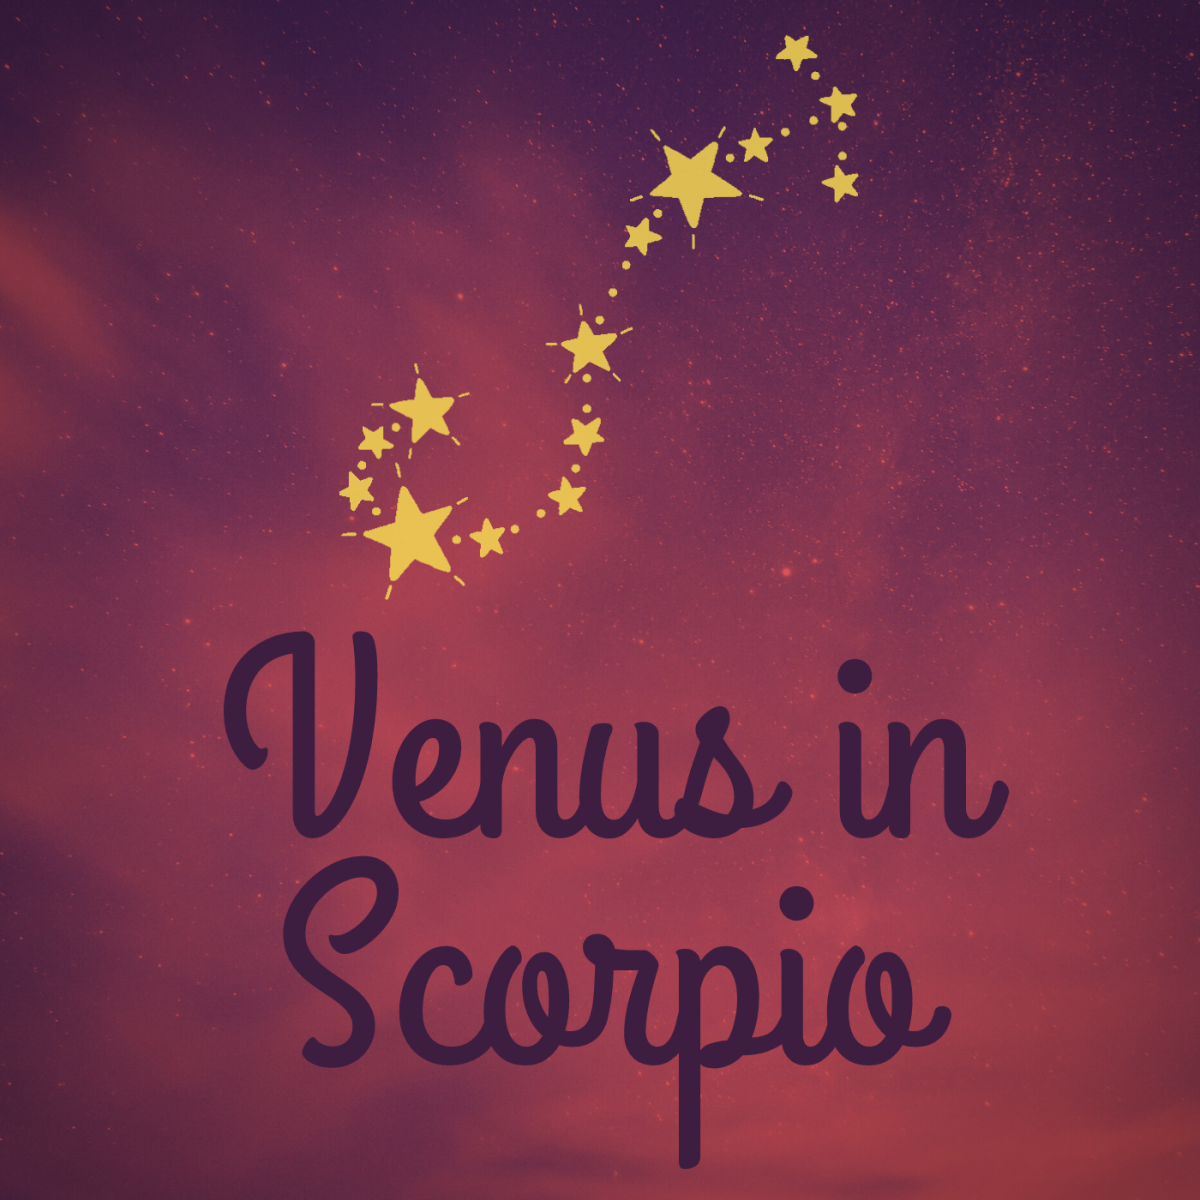 Venus in Scorpio Explained